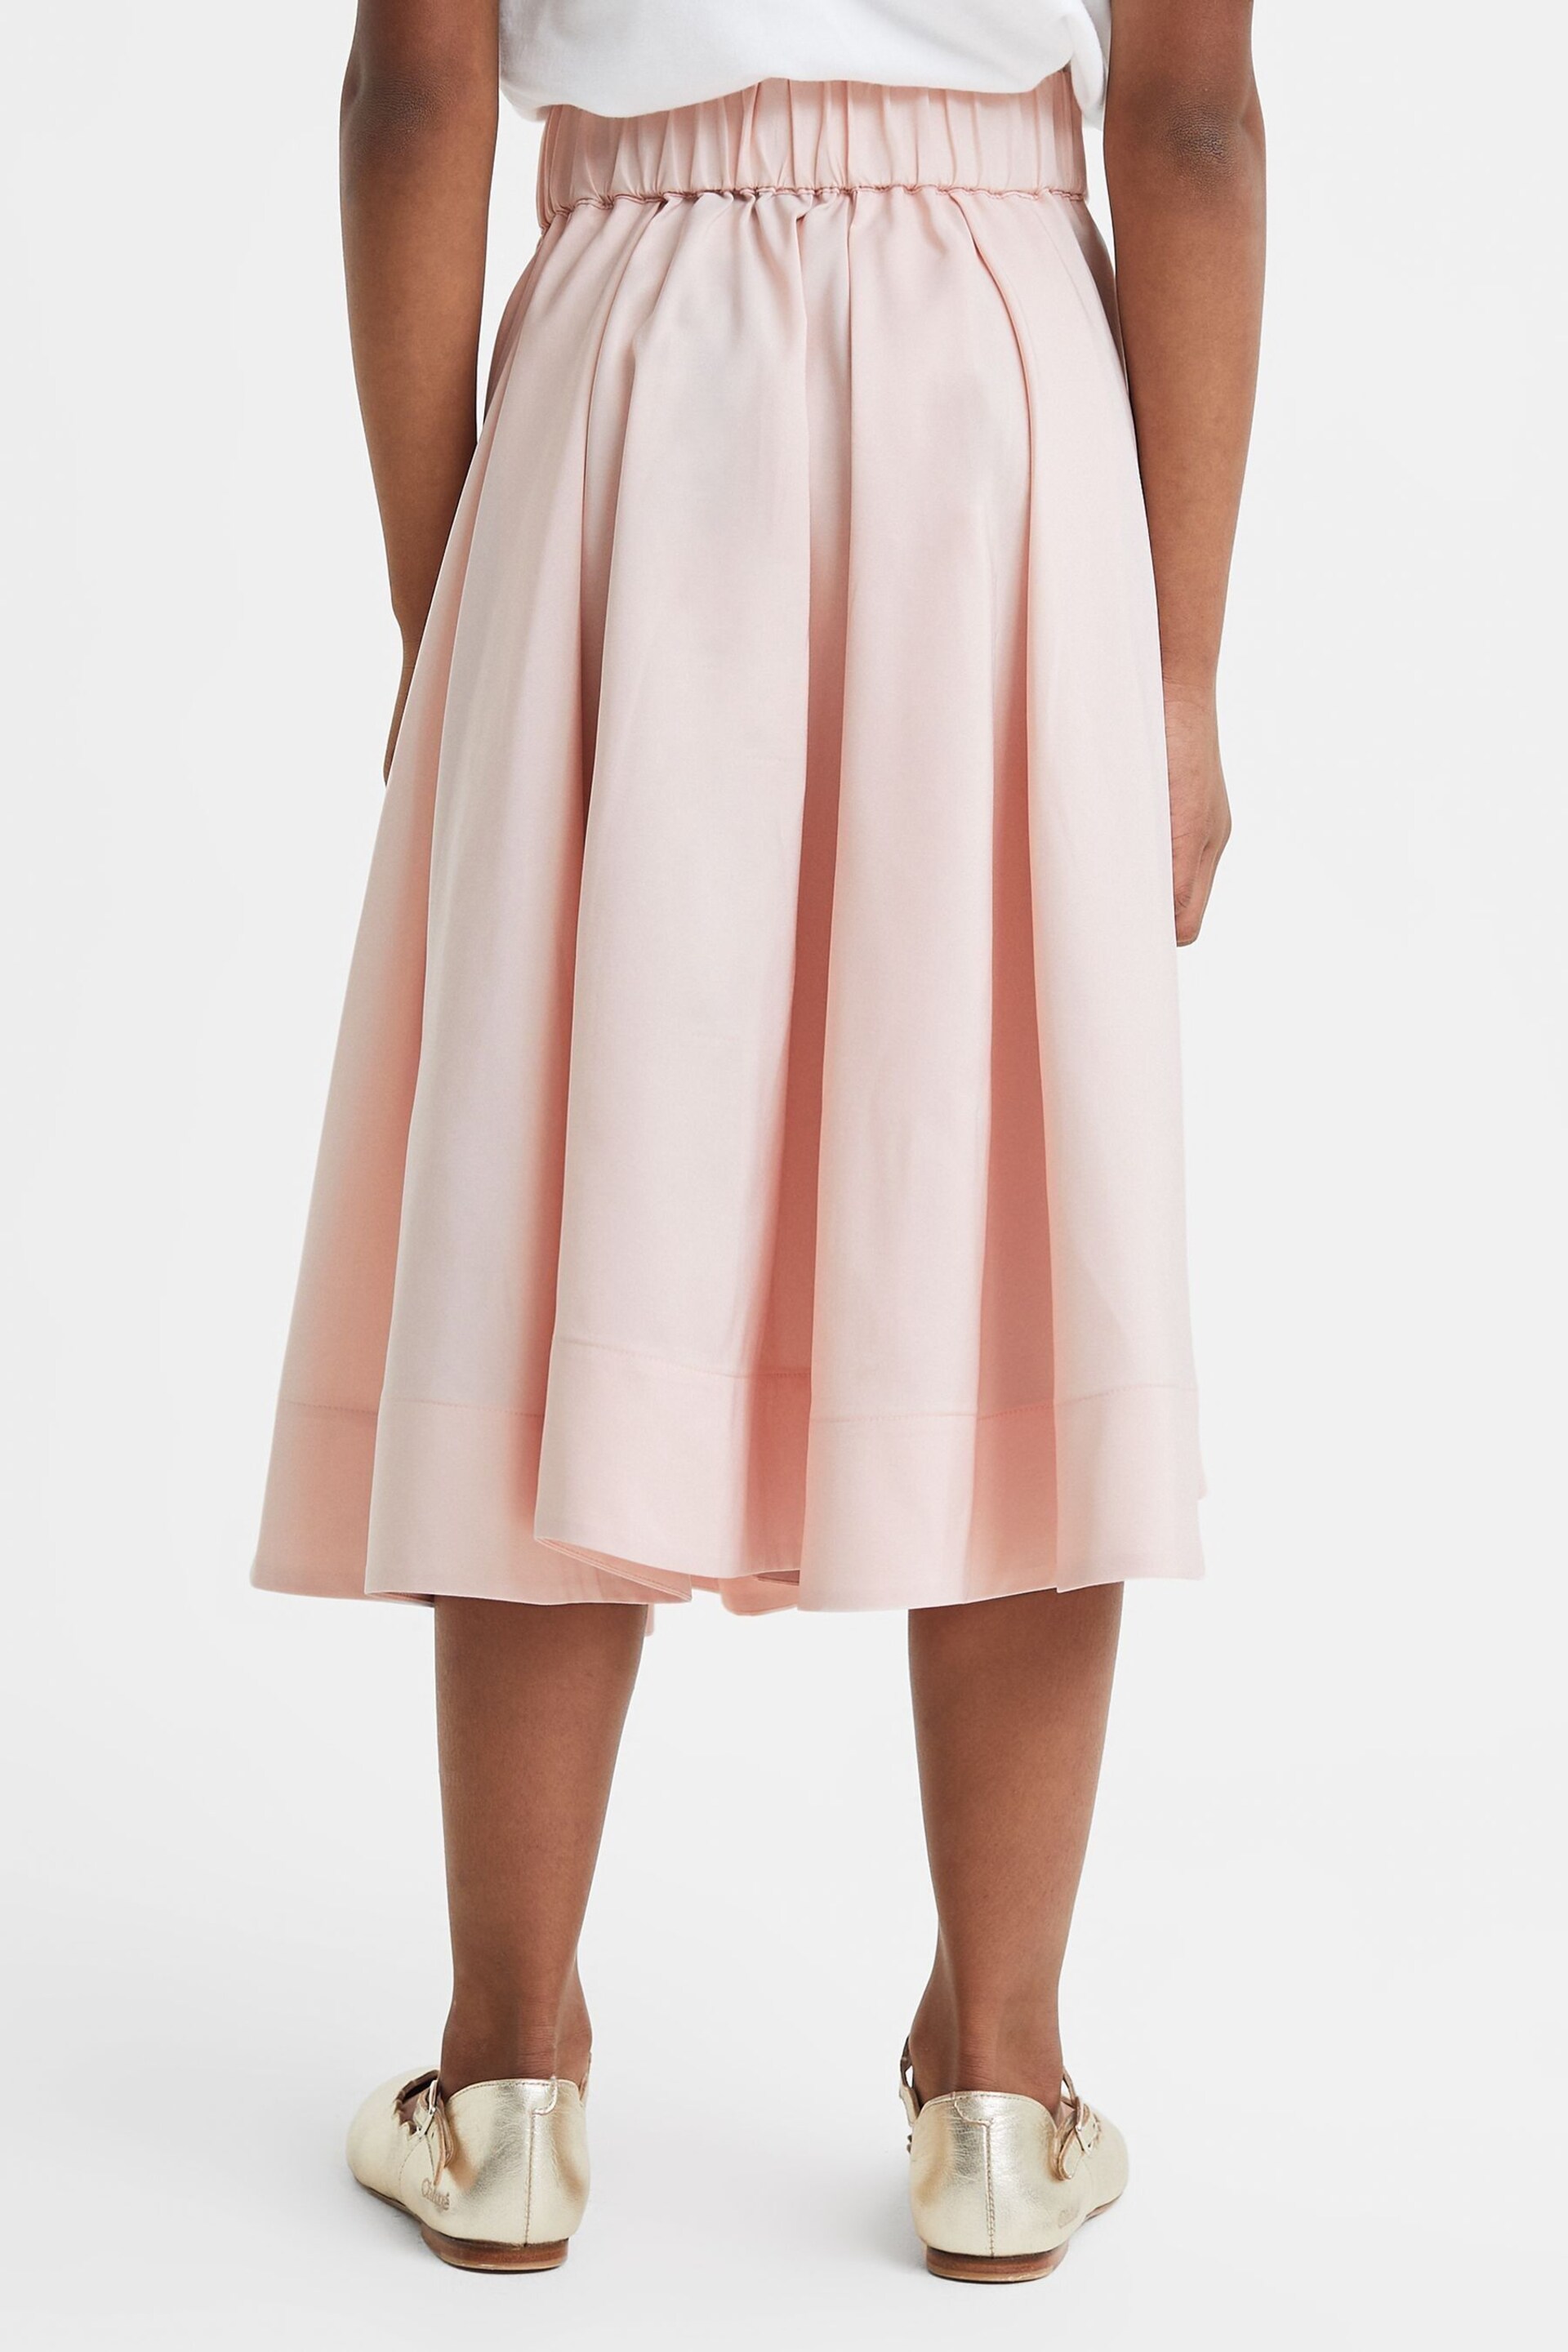 Reiss Pink Garcia Senior Pleated Belted Taffeta Midi Skirt - Image 5 of 6